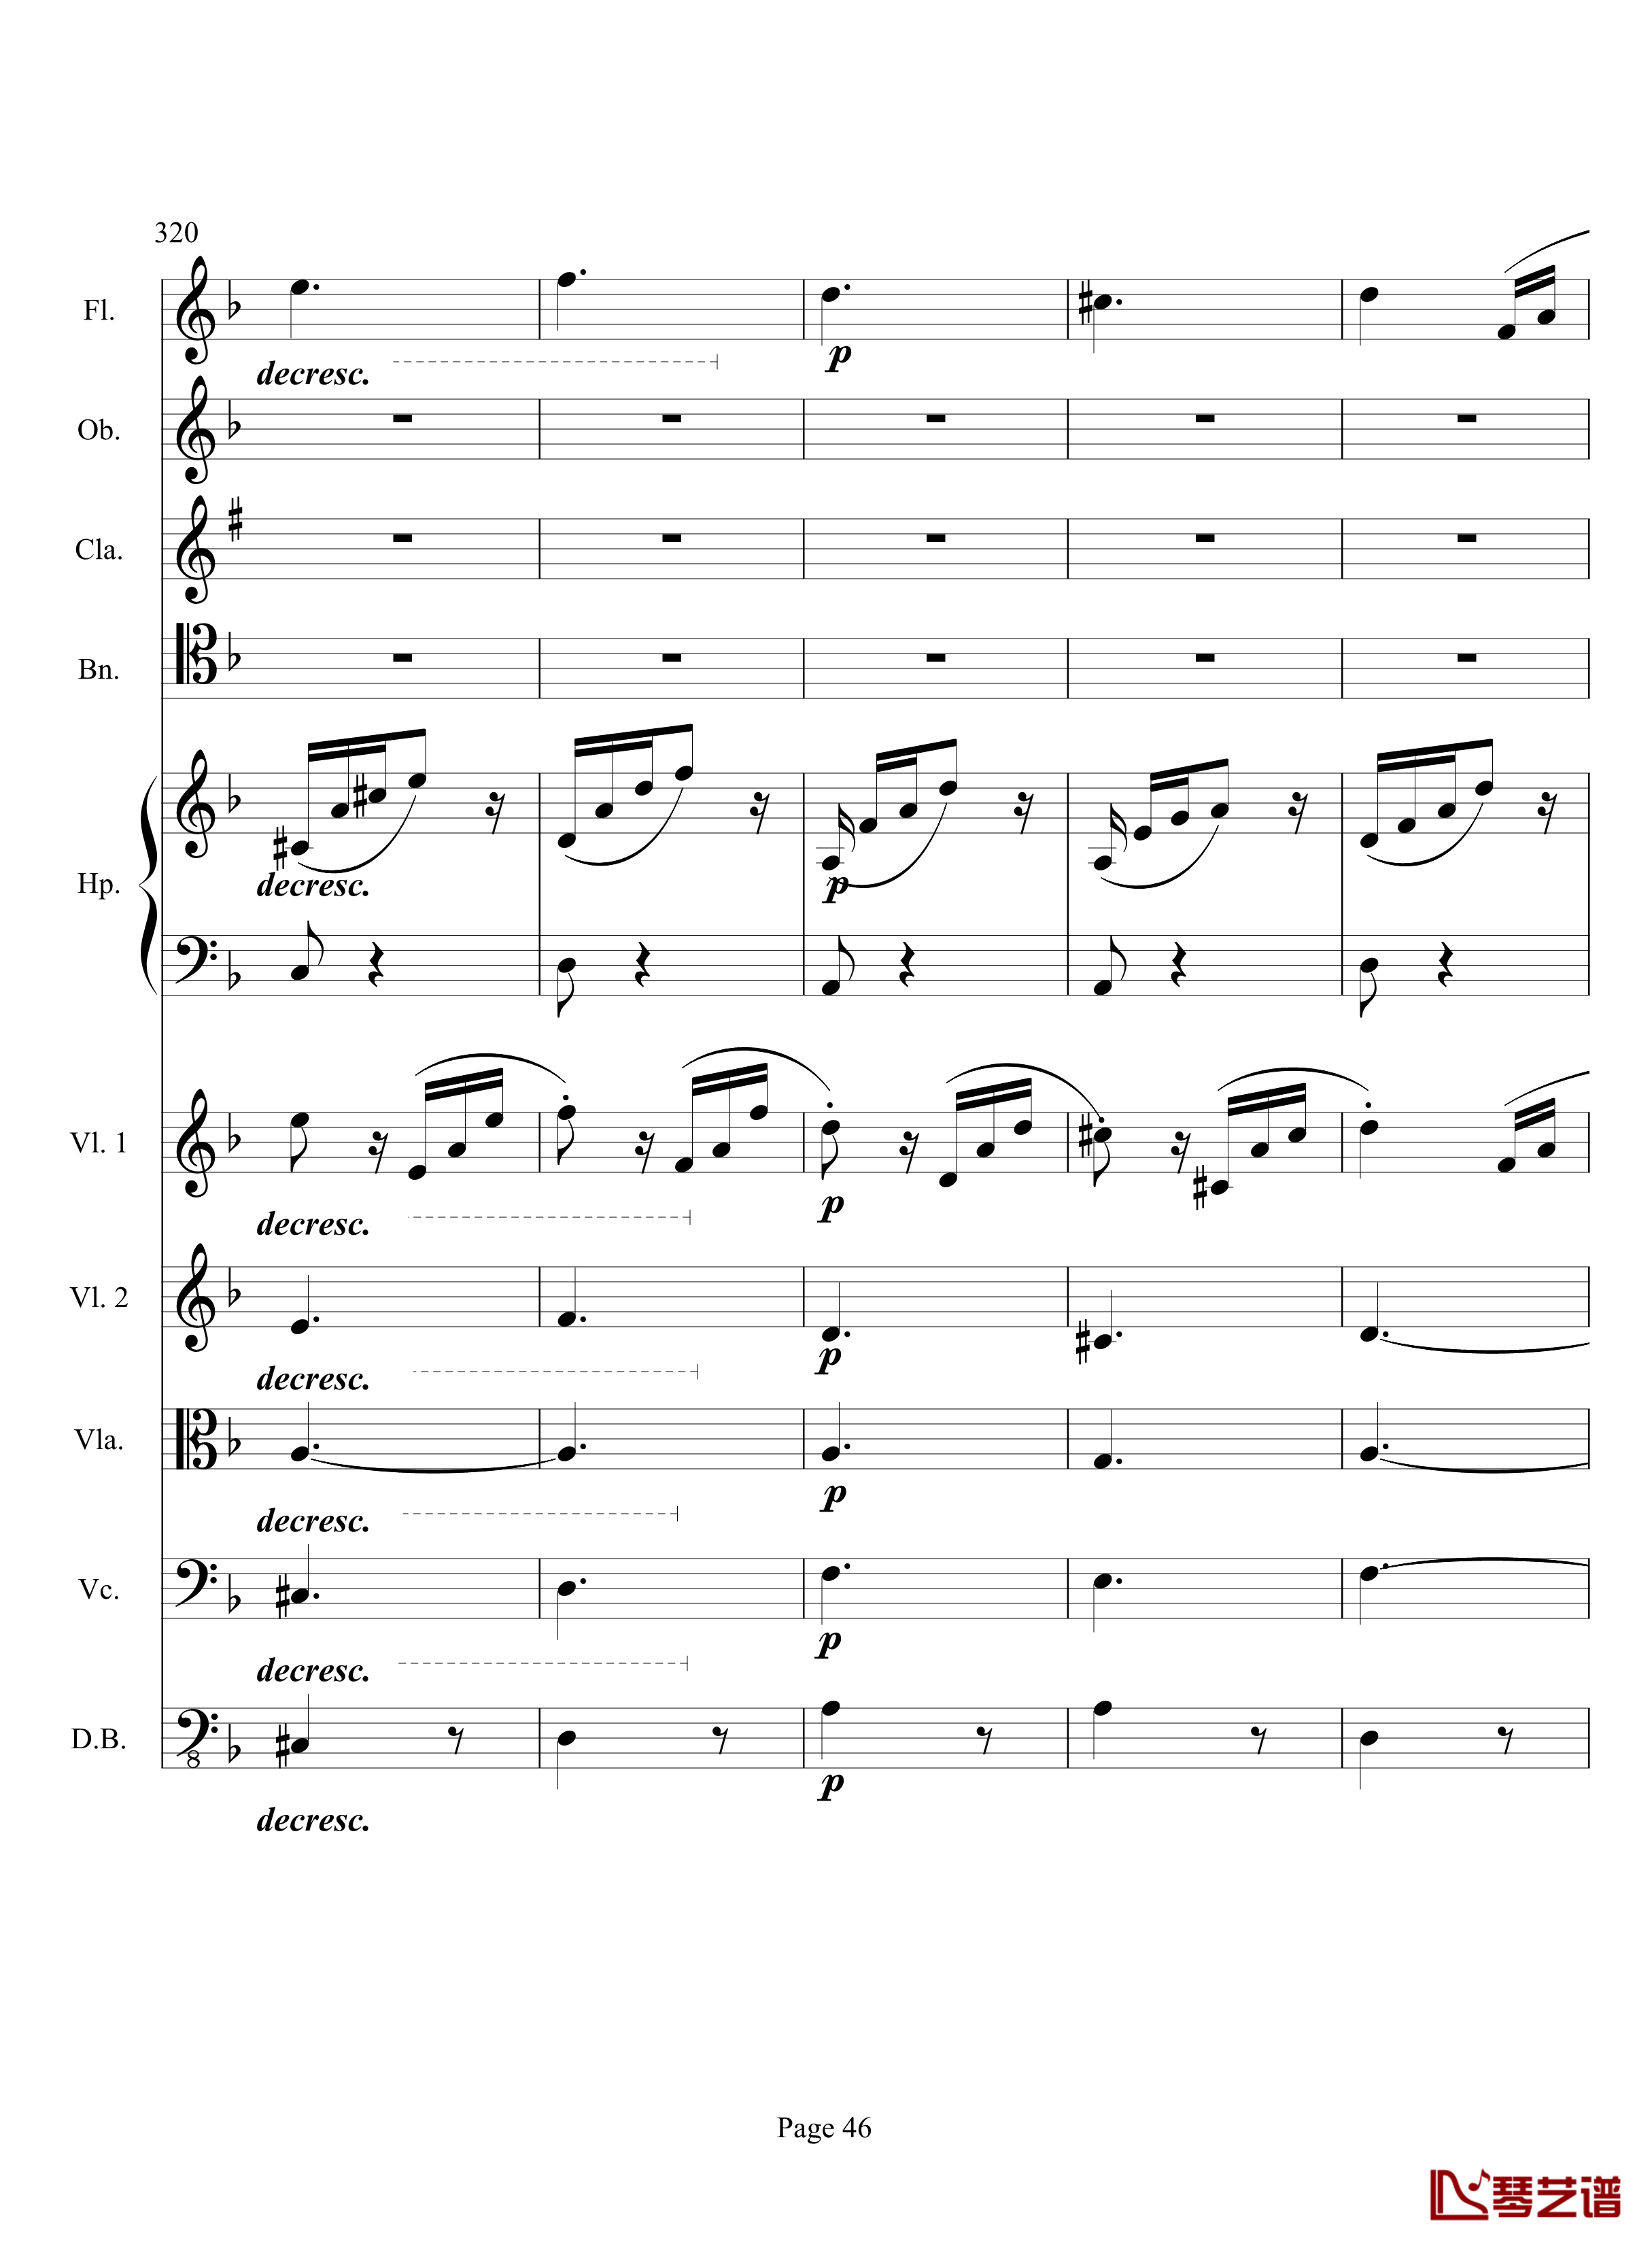 奏鸣曲之交响钢琴谱-第17首-Ⅲ-贝多芬-beethoven46